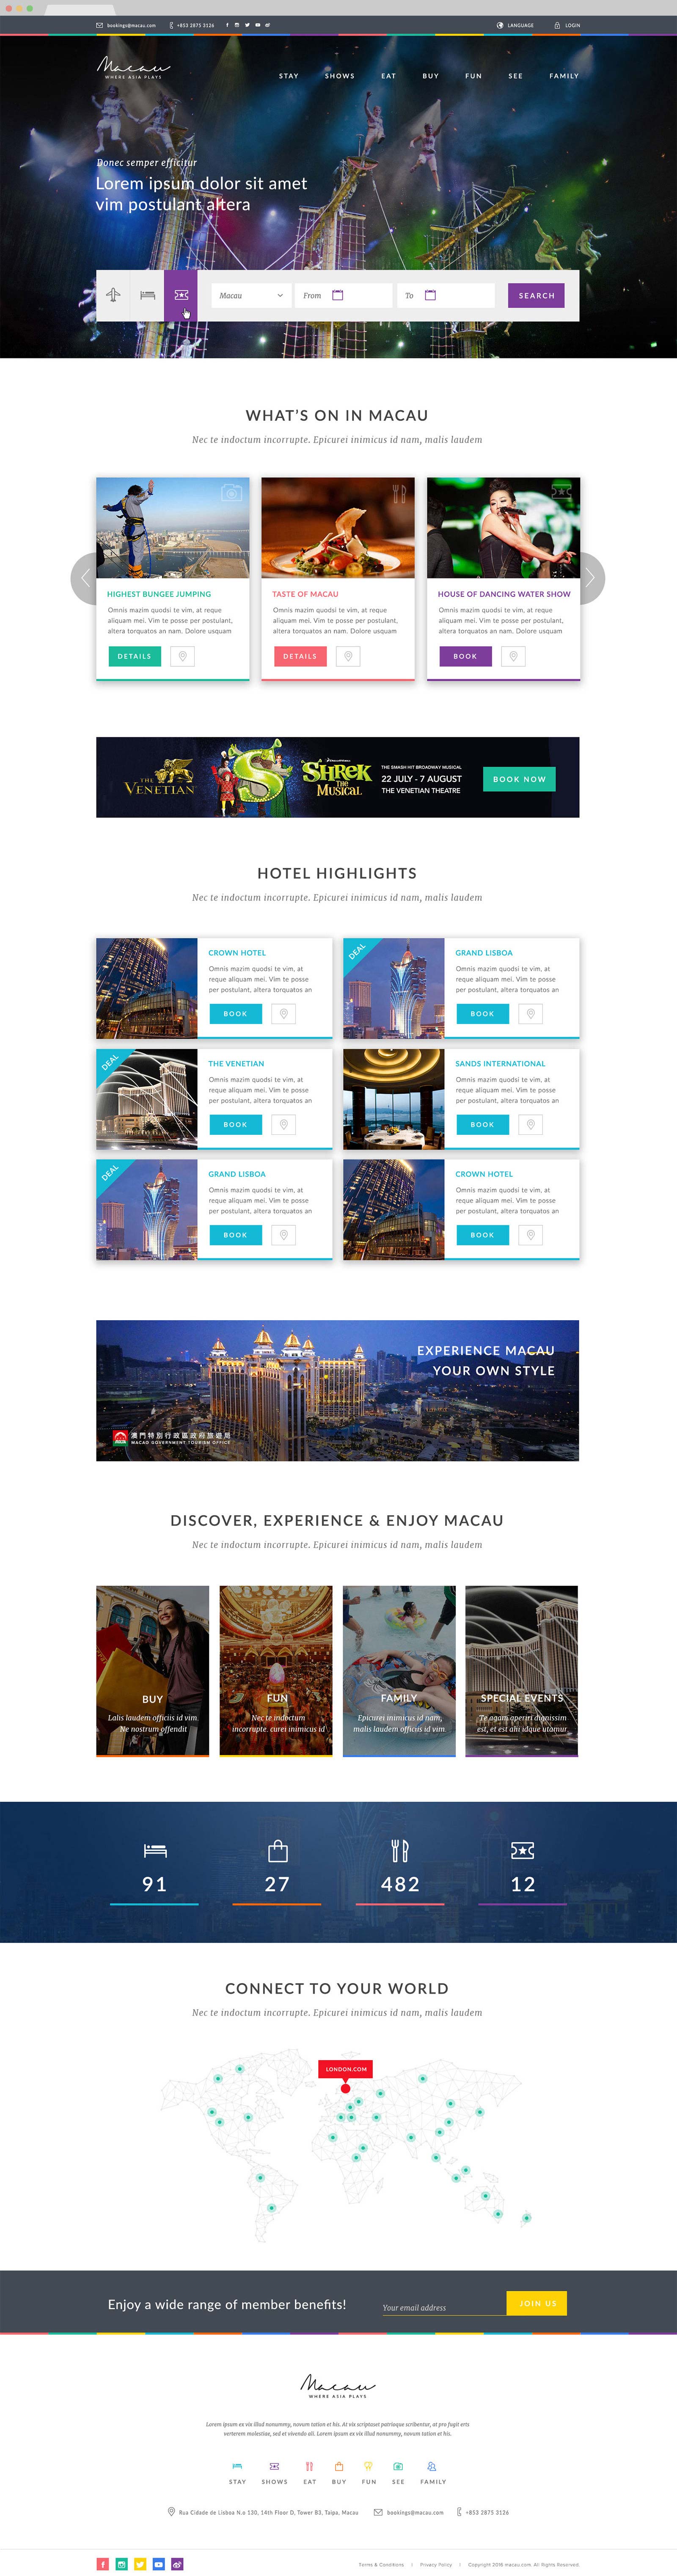 web design bali macau.com 00 - Macau.com